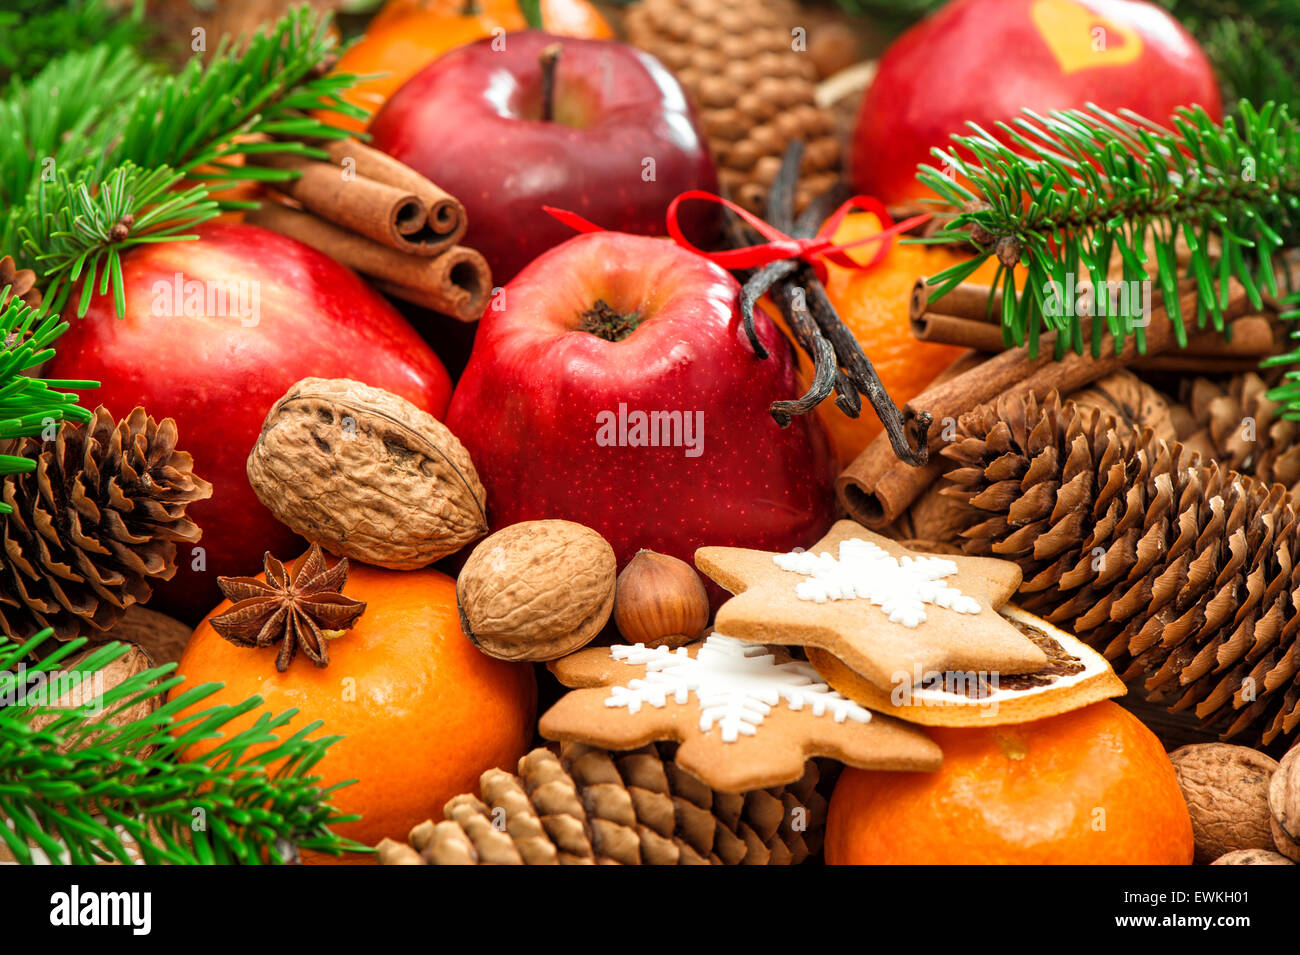 Weihnachten Essen Hintergrund. Apfel und Mandarine Obst, Walnüsse, Kekse, Gewürze mit grünen Ästen Stockfoto